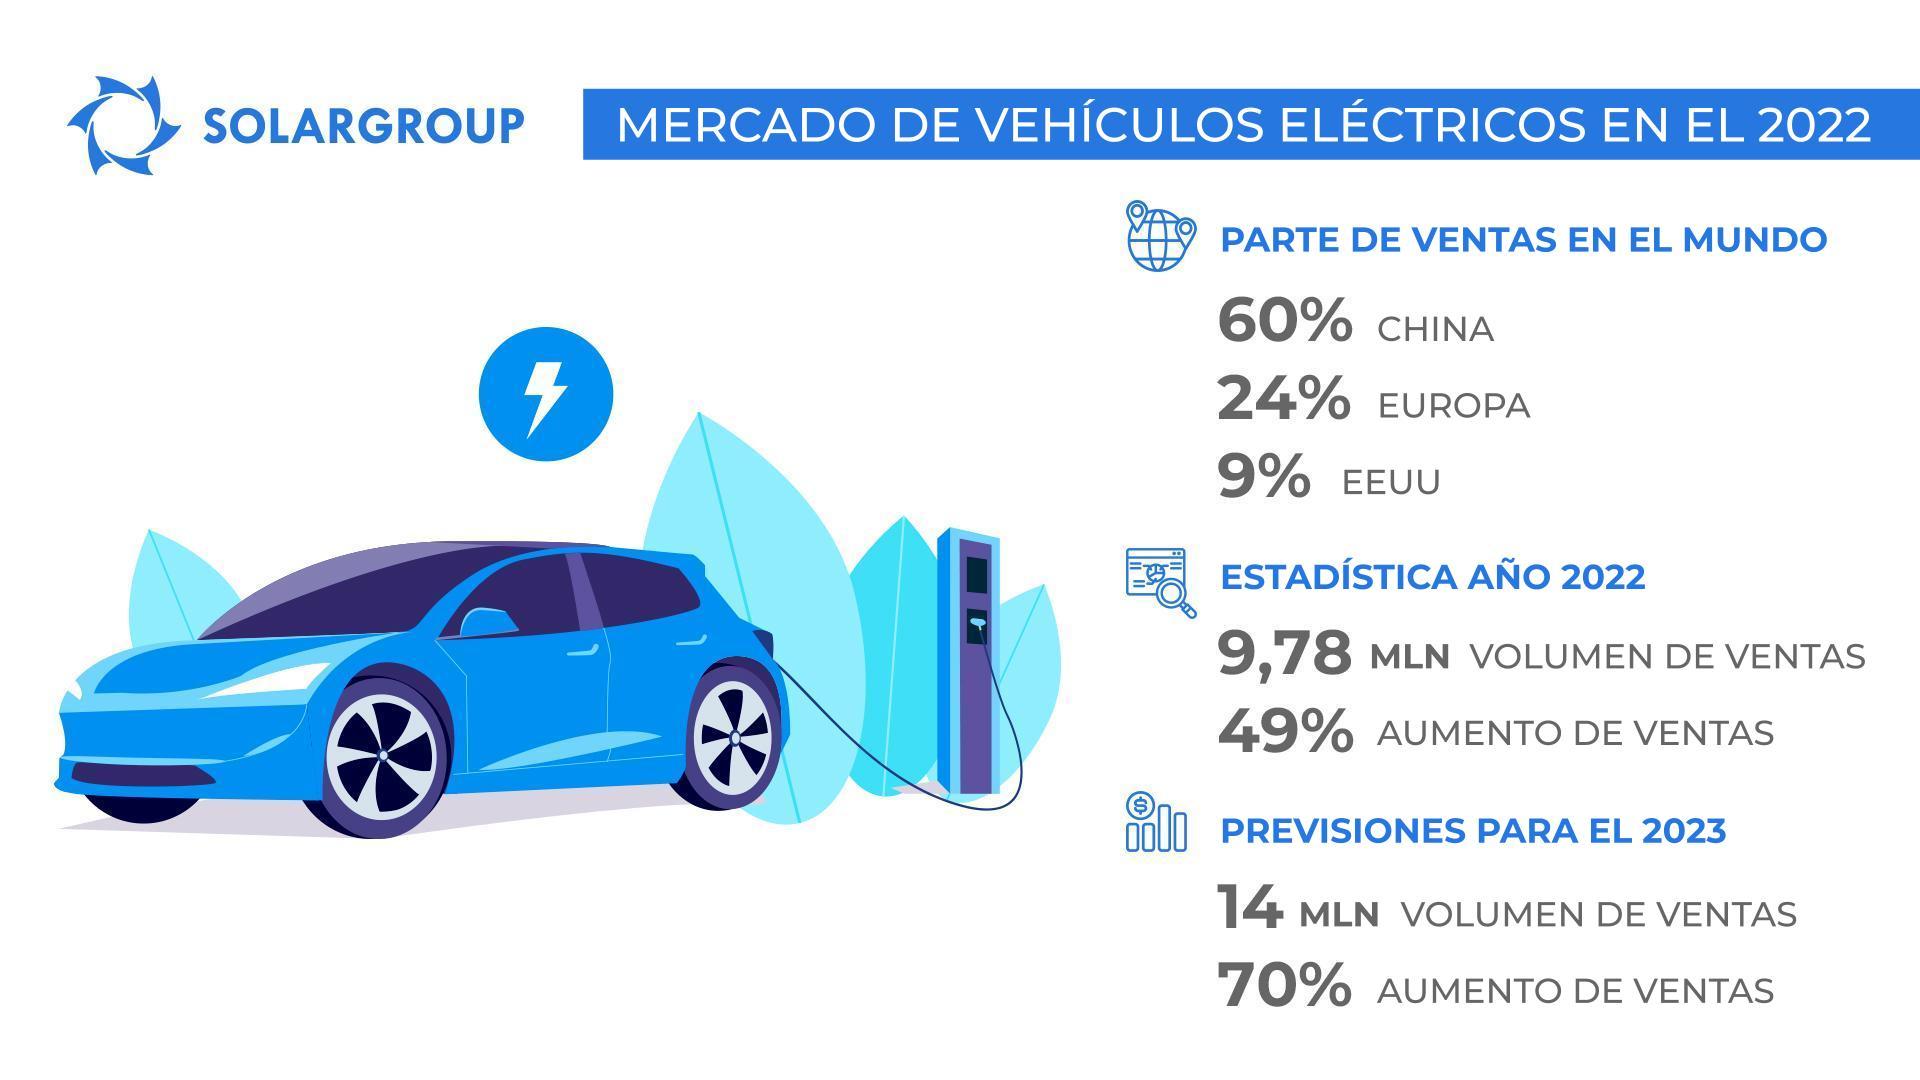 Uno de cada diez vehículos vendidos en el mundo es eléctrico: resultados del año 2022 para el mercado de los vehículos eléctricos